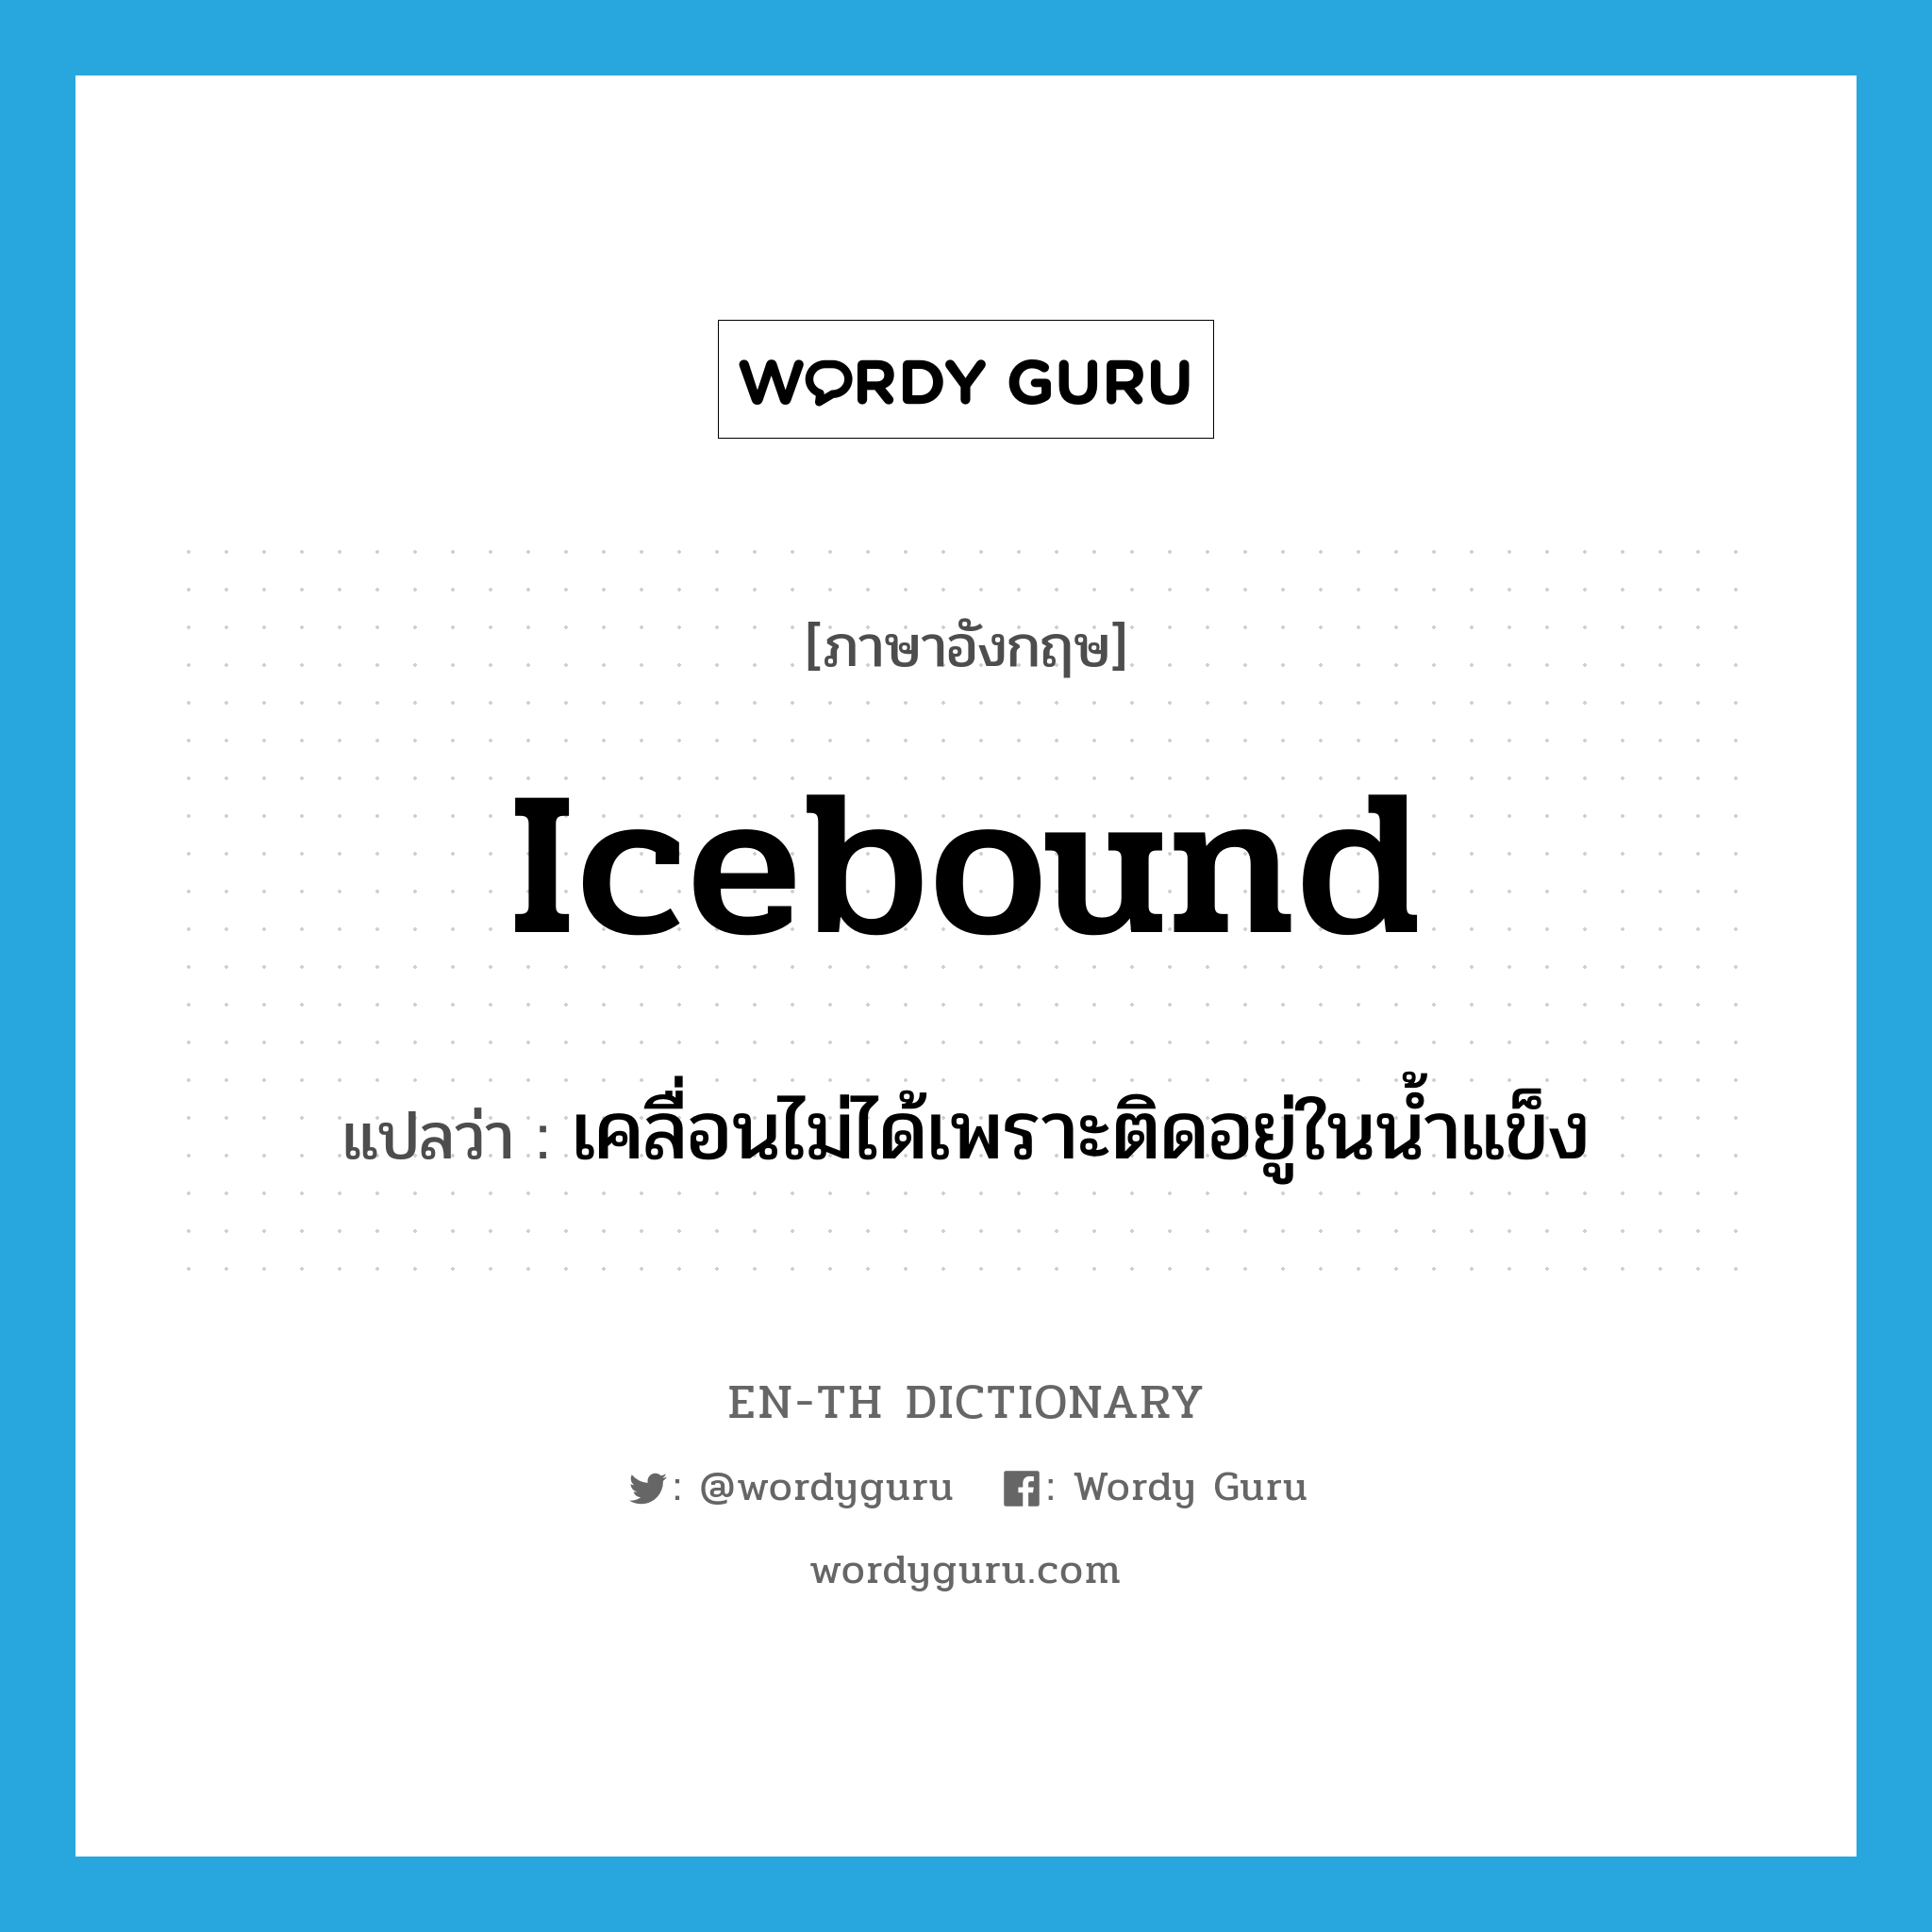 เคลื่อนไม่ได้เพราะติดอยู่ในน้ำแข็ง ภาษาอังกฤษ?, คำศัพท์ภาษาอังกฤษ เคลื่อนไม่ได้เพราะติดอยู่ในน้ำแข็ง แปลว่า icebound ประเภท ADJ หมวด ADJ